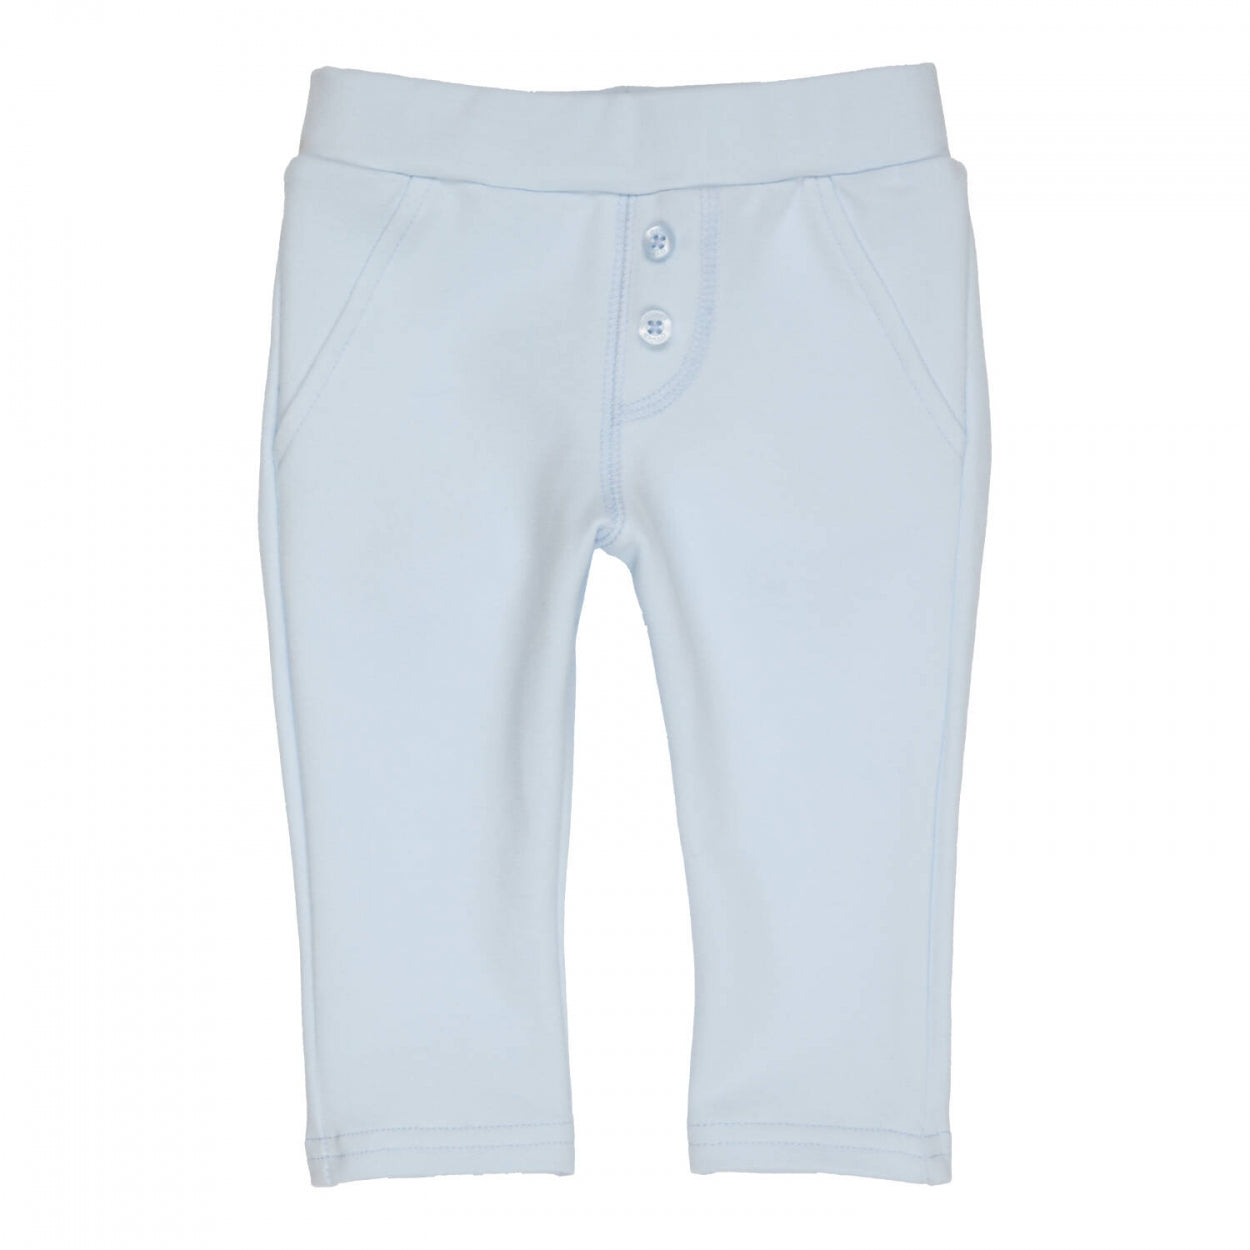 Jongens Trousers Carbon van Gymp in de kleur Light Blue in maat 86.